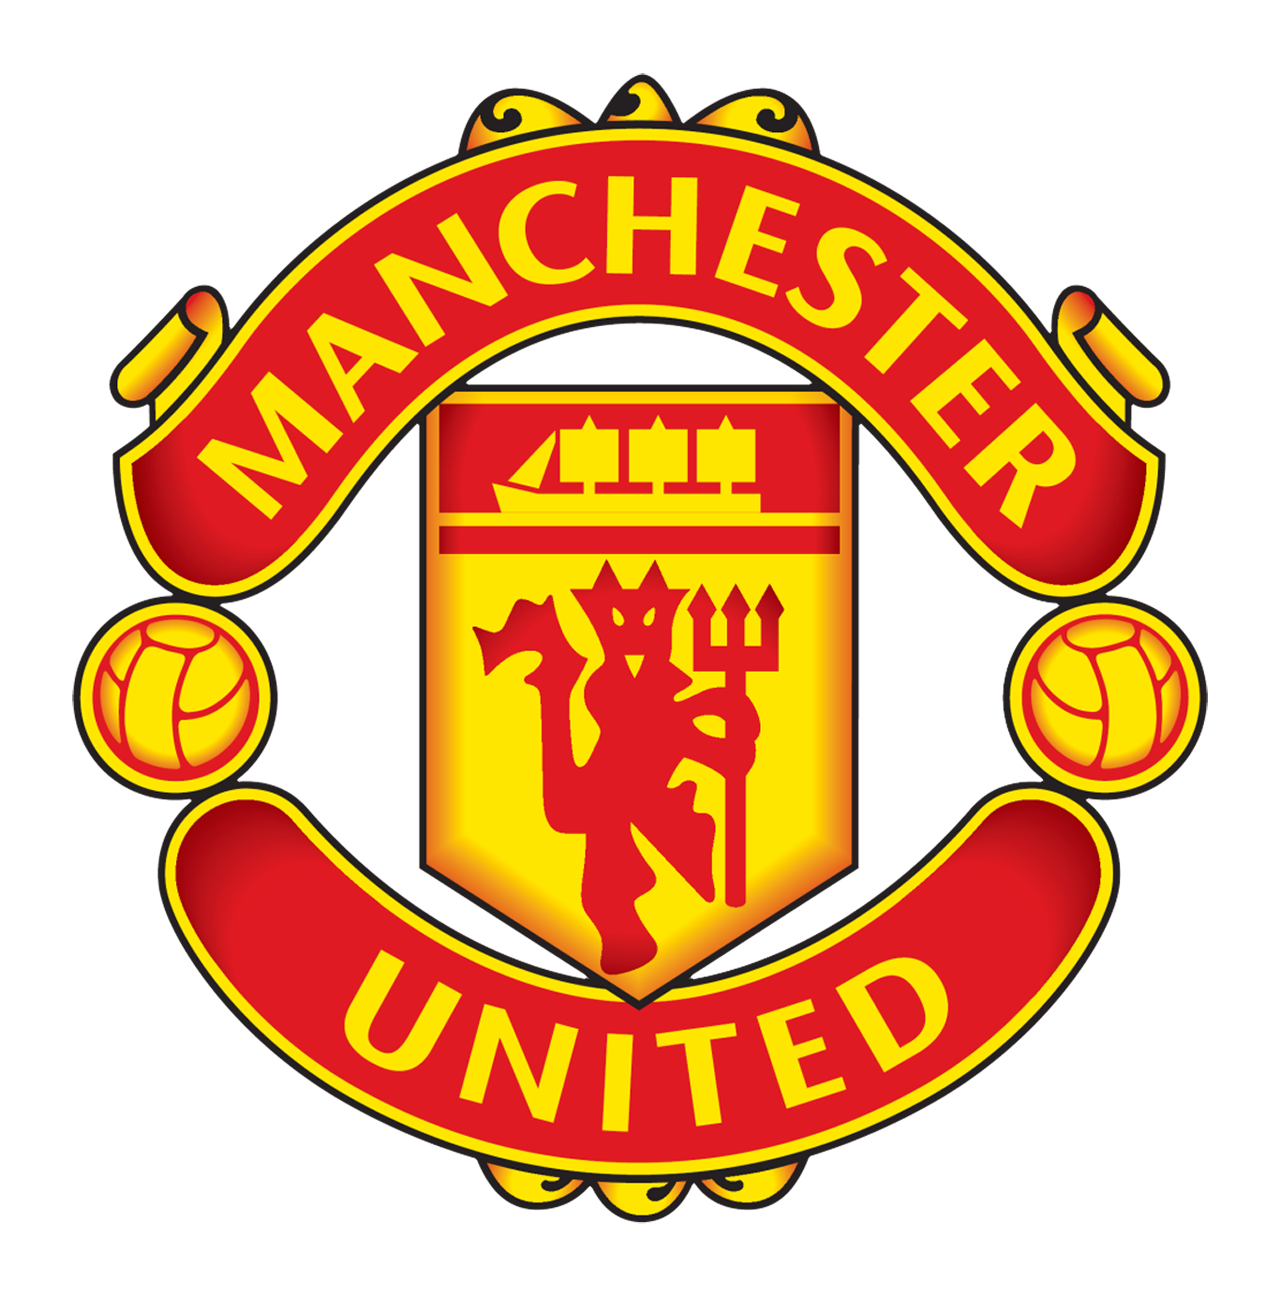 Manchester United takım arması